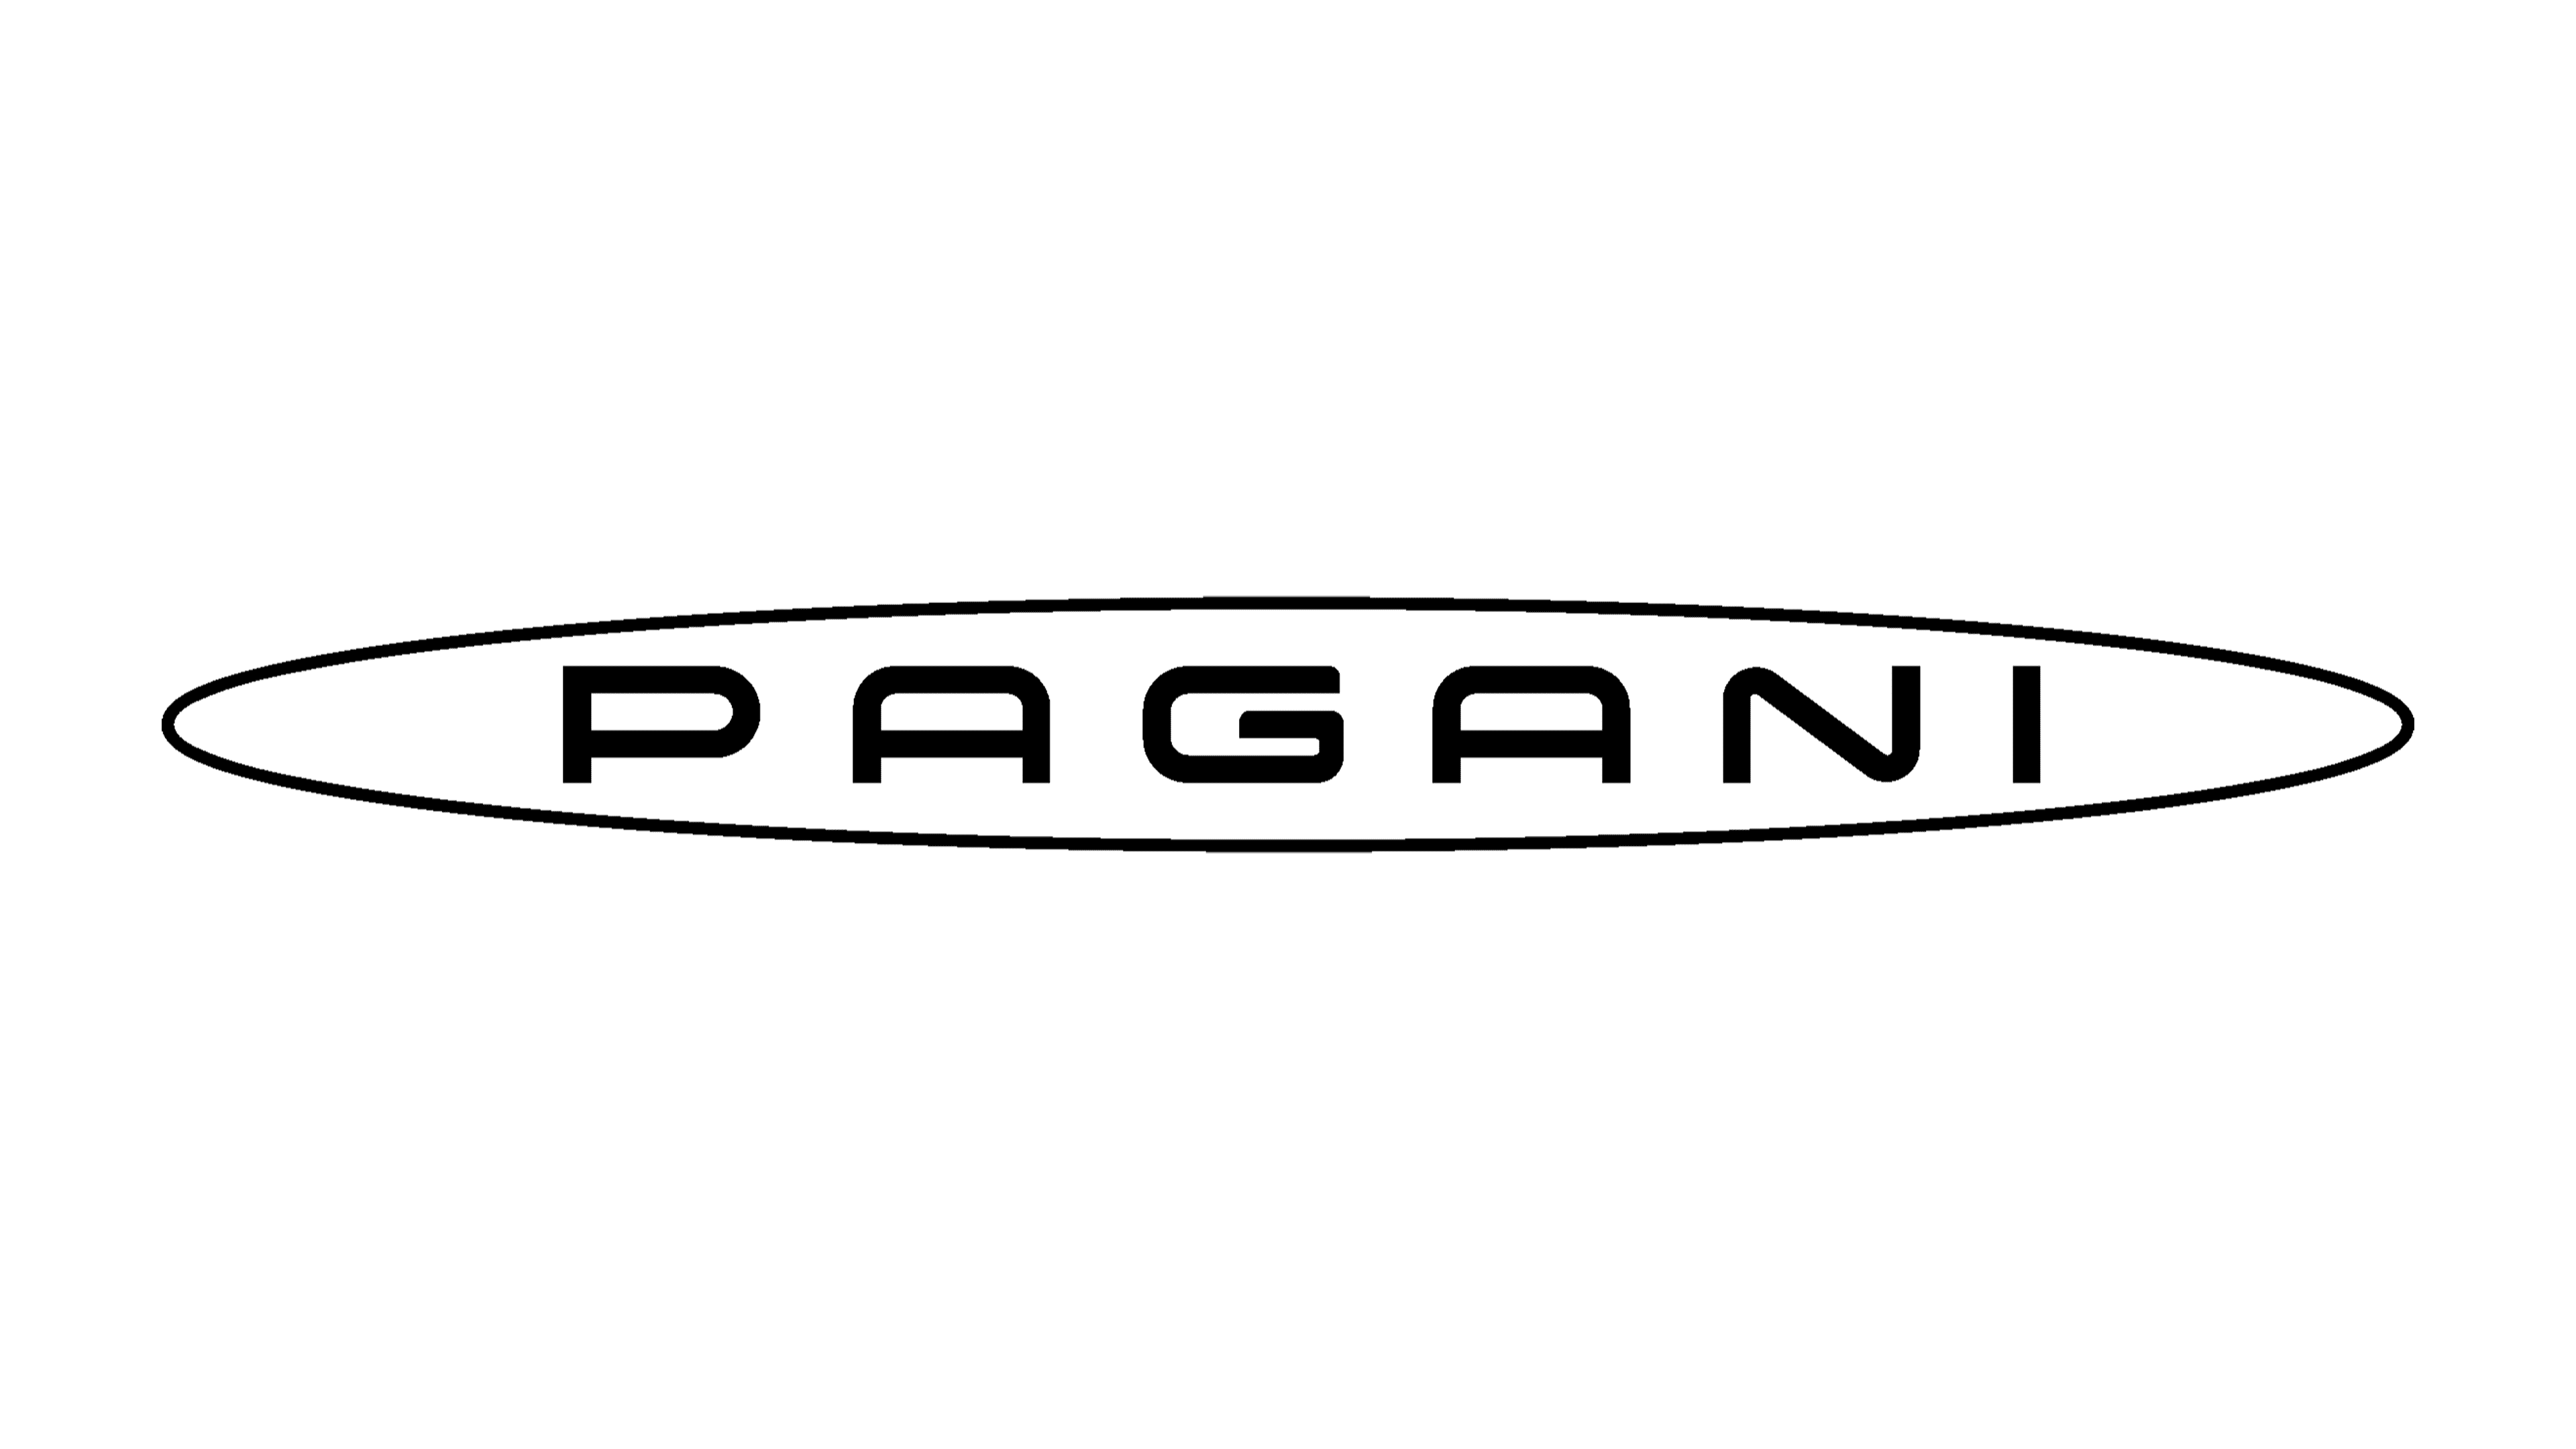 Pagani Huayra at The Quail | Mind Over Motor